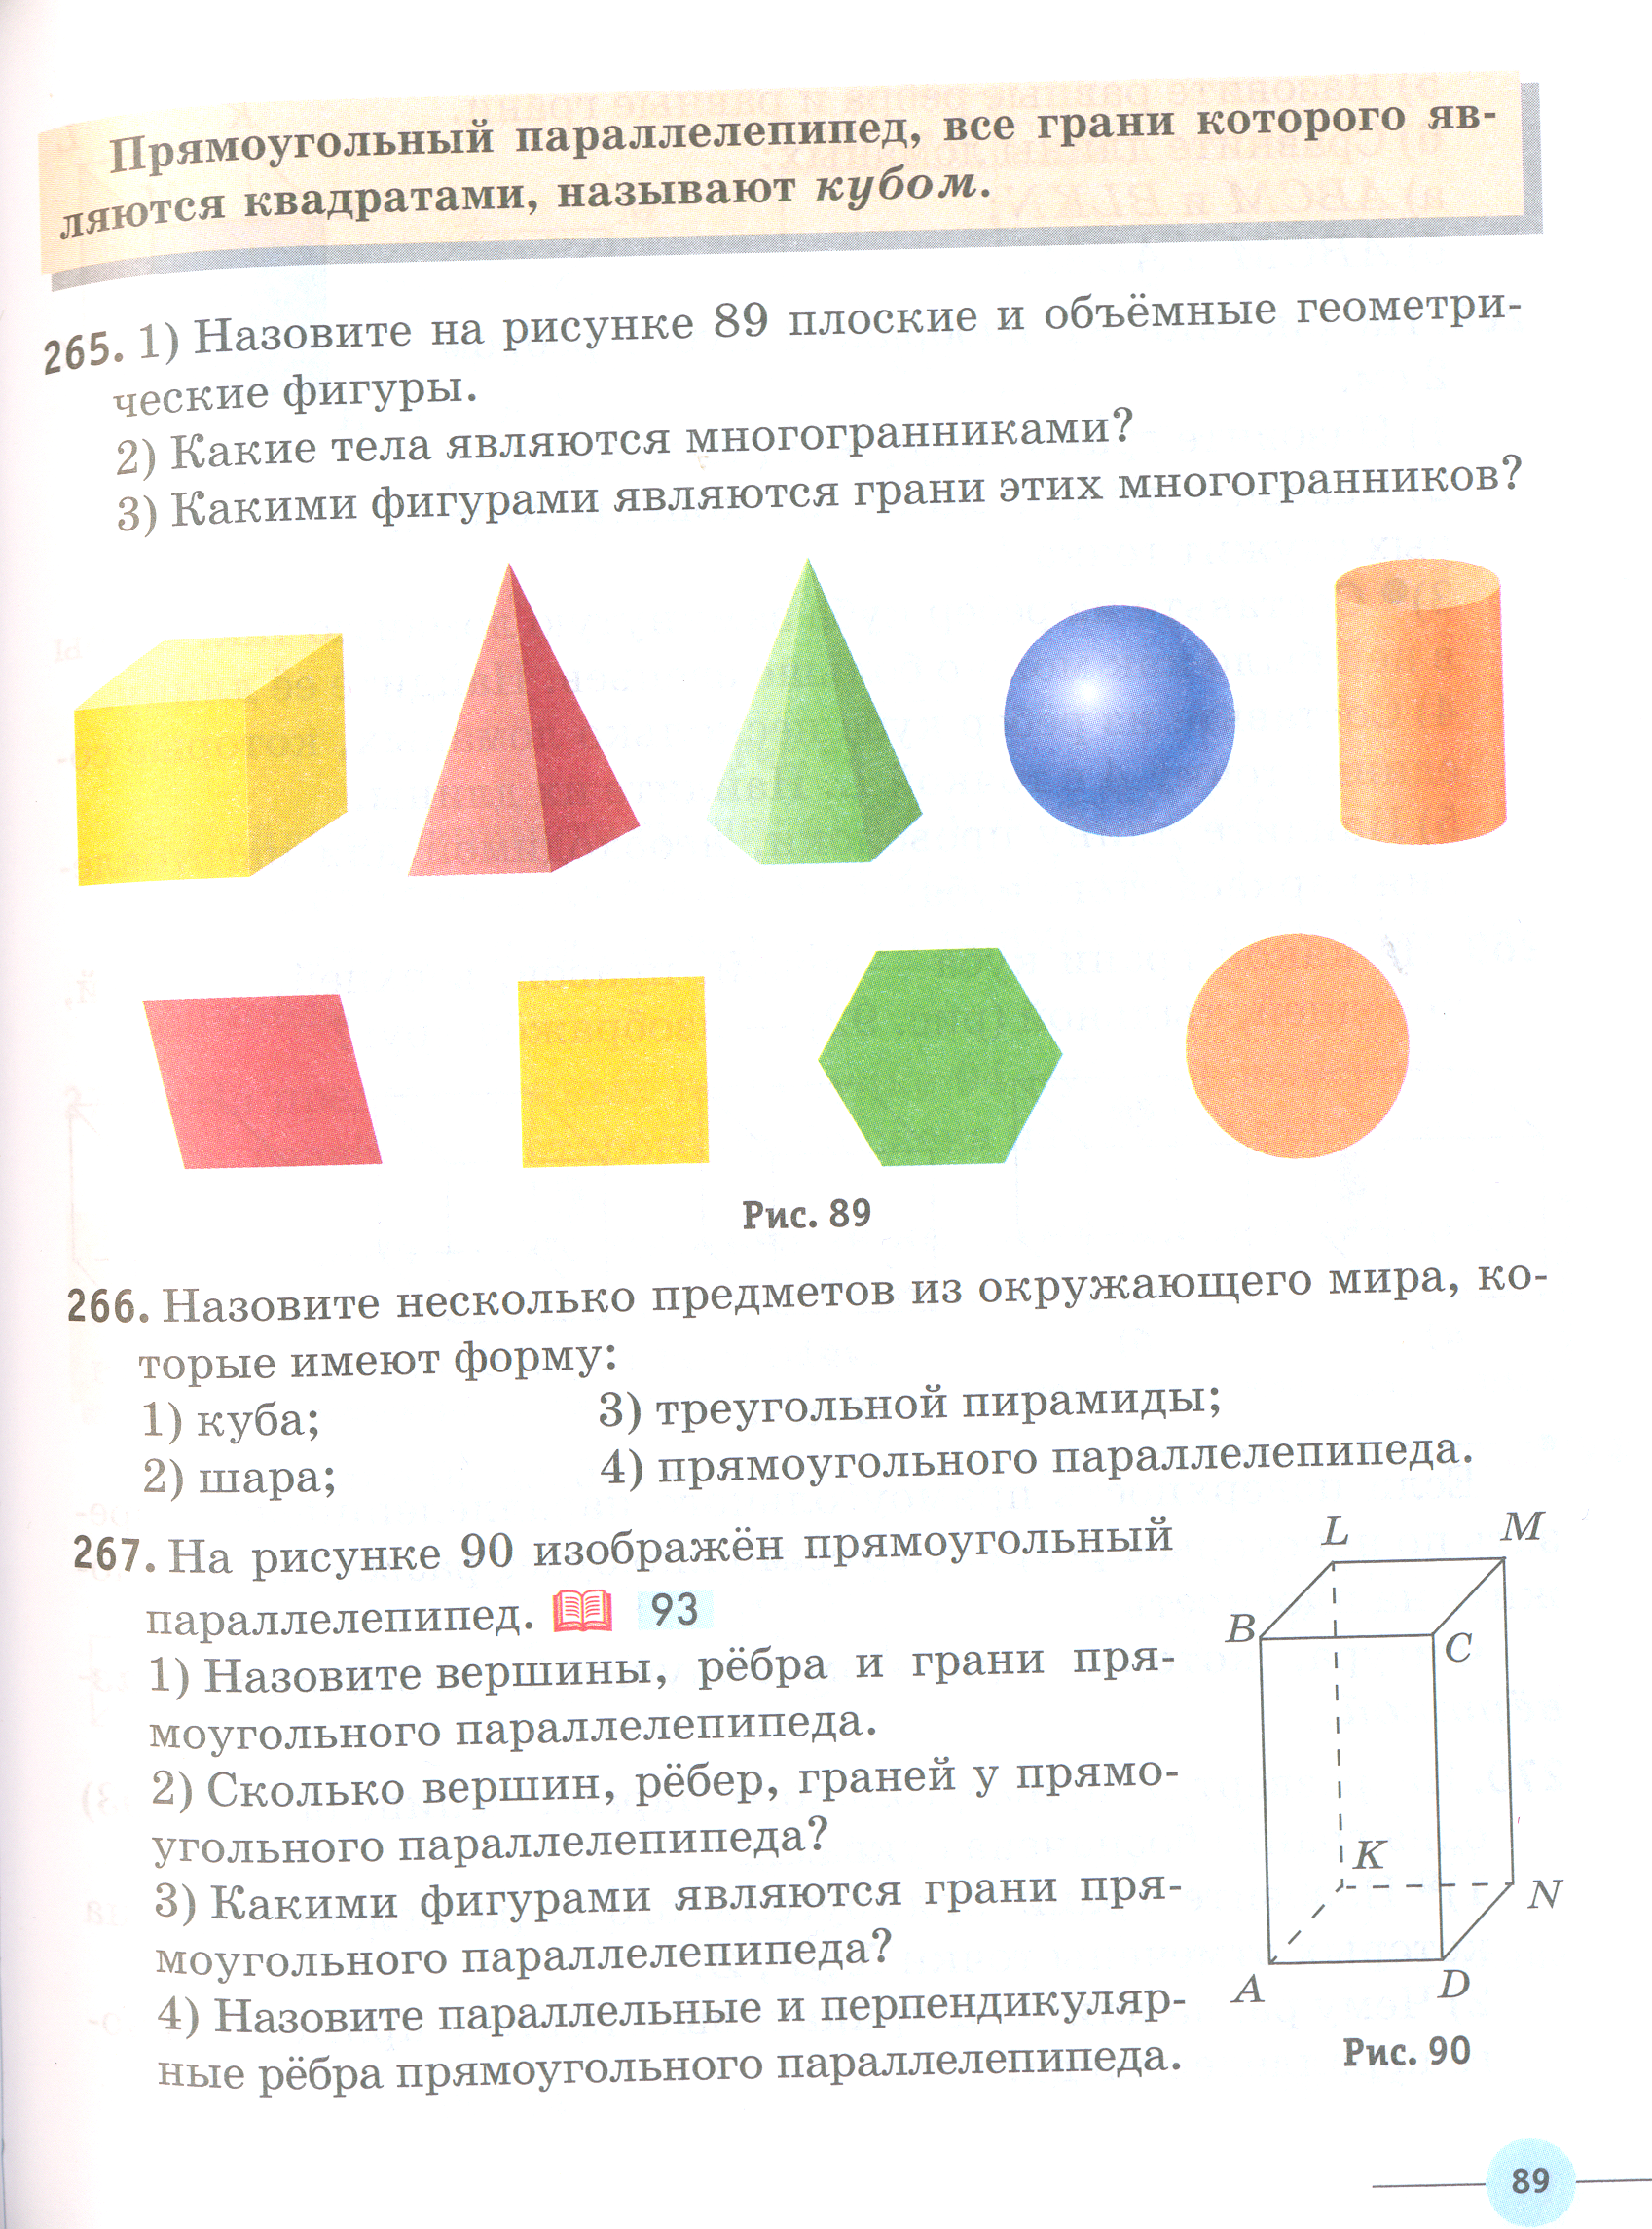 Сценарий урока математики в 5 классе по теме «Объем прямоугольного параллелепипеда»